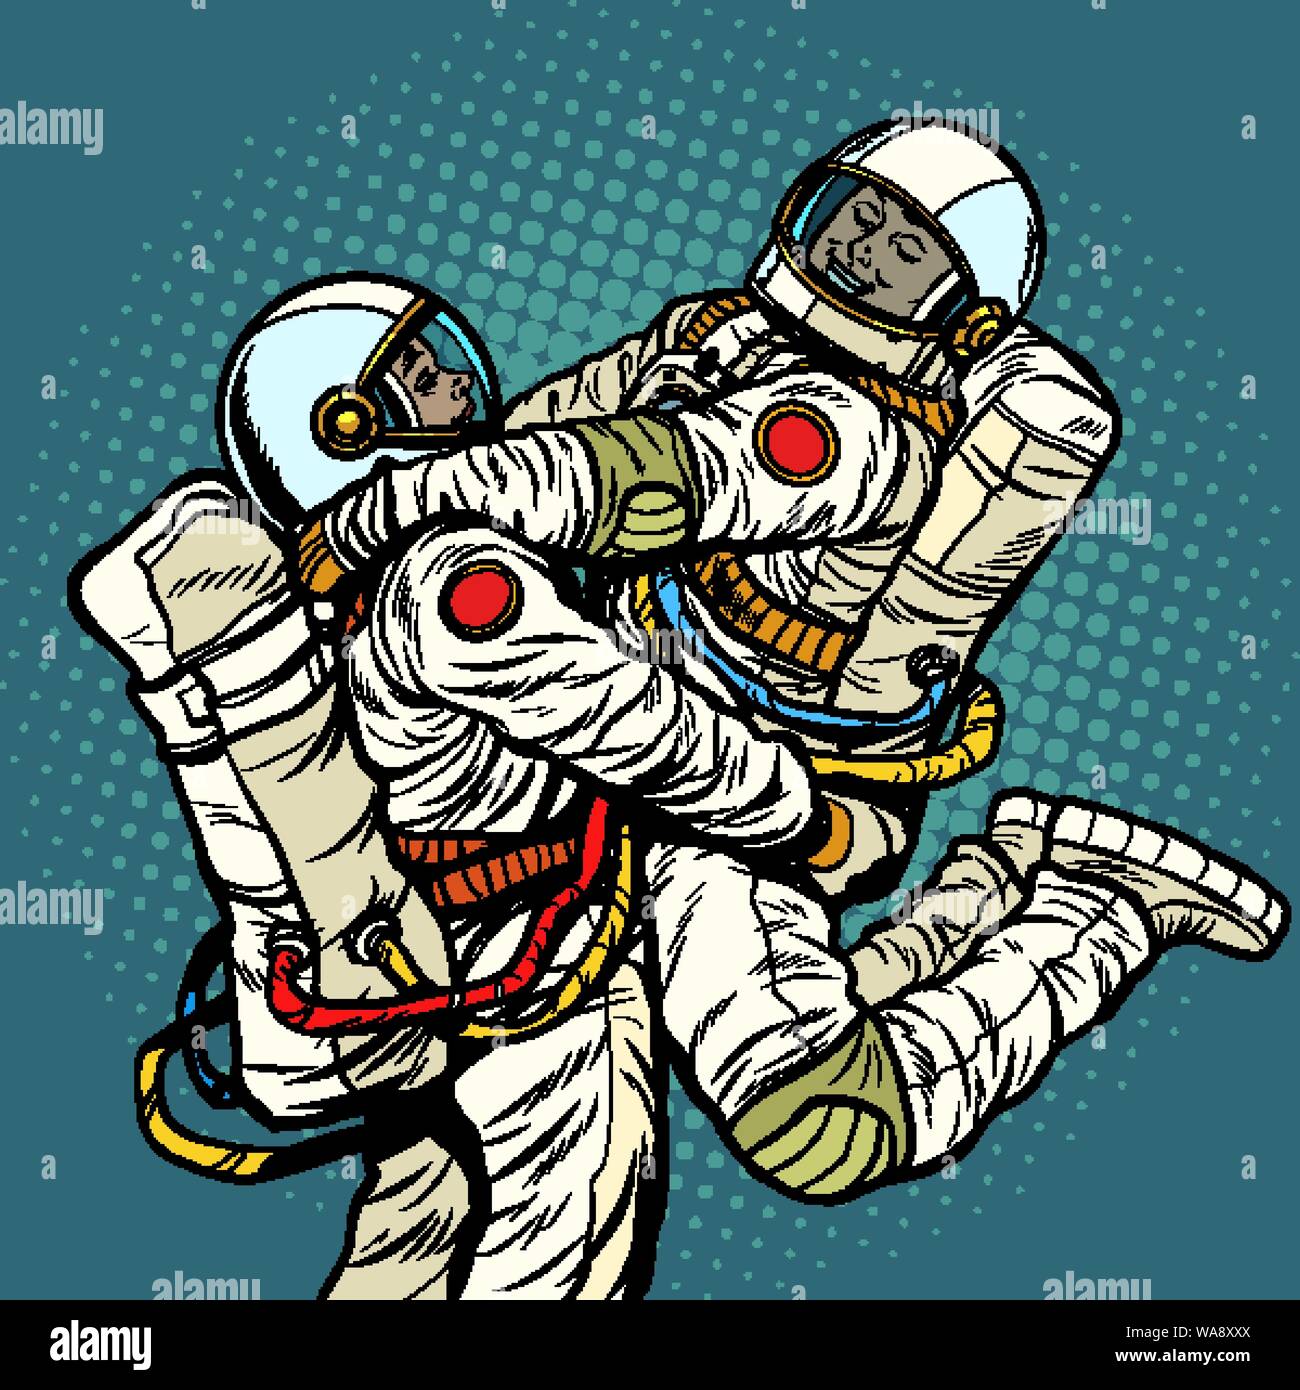 Verliebtes paar Astronaut, Mann und Frau. Liebe Romantik Umarmungen. Pop Art retro Vektor illustration Zeichnung Stock Vektor